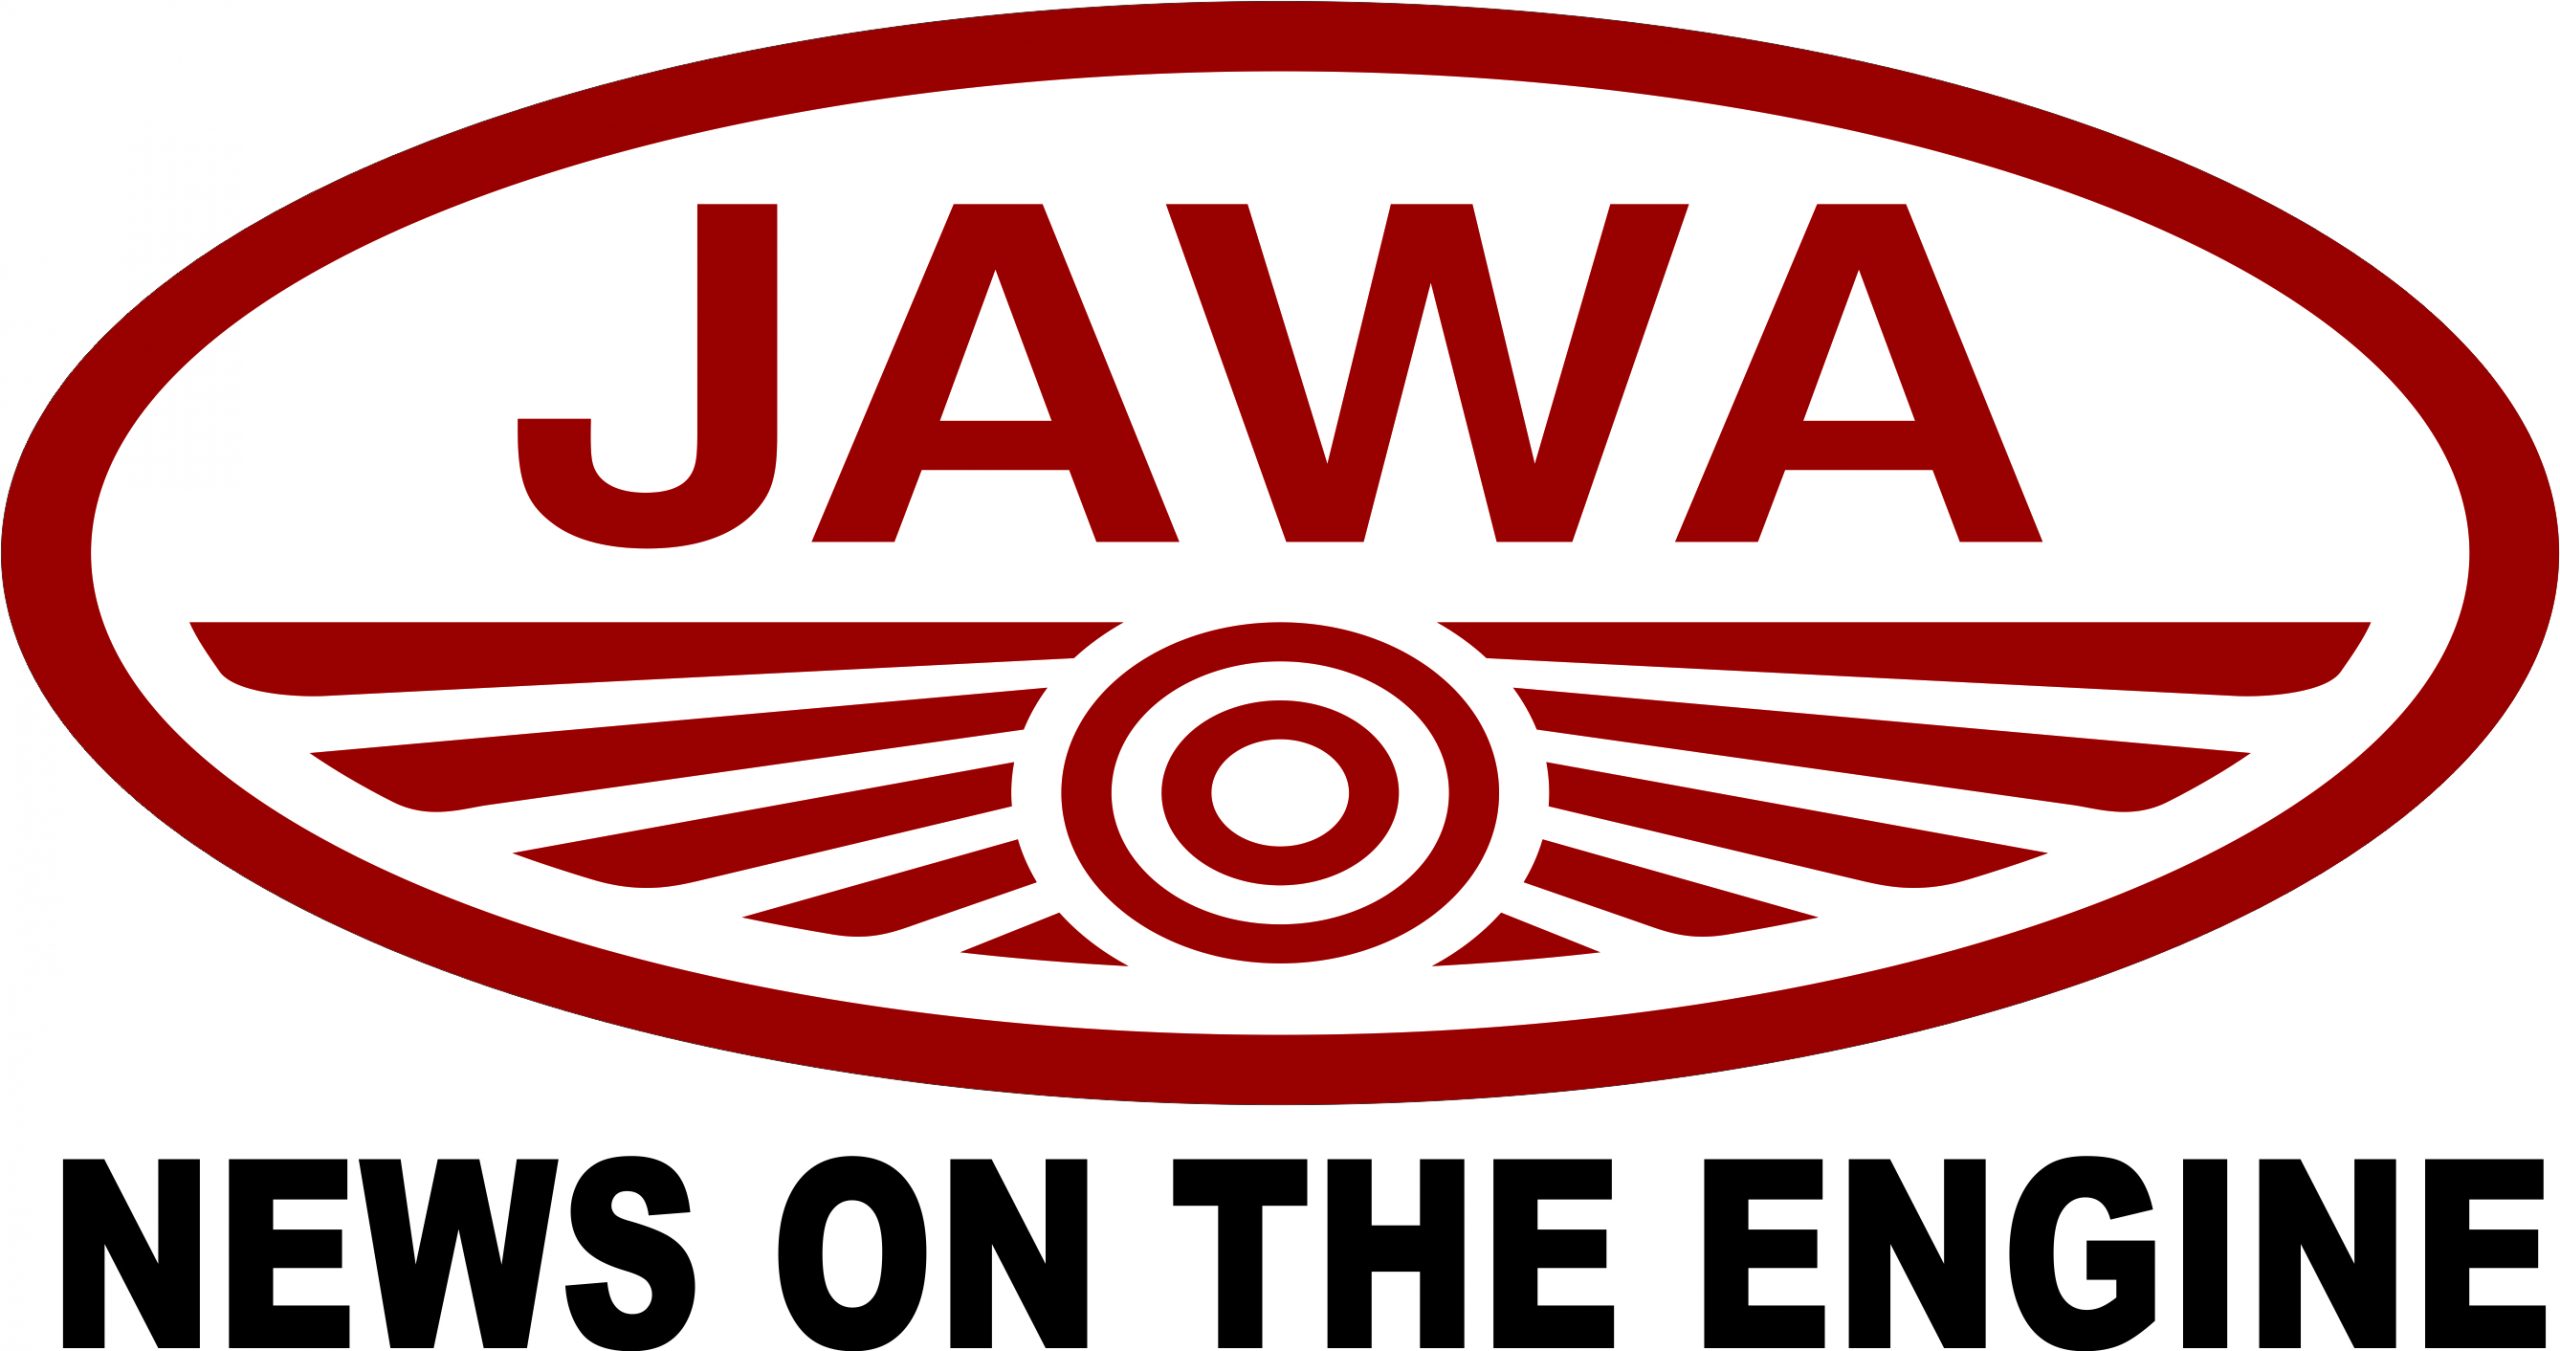 JAWA-ENGINE-NEWS